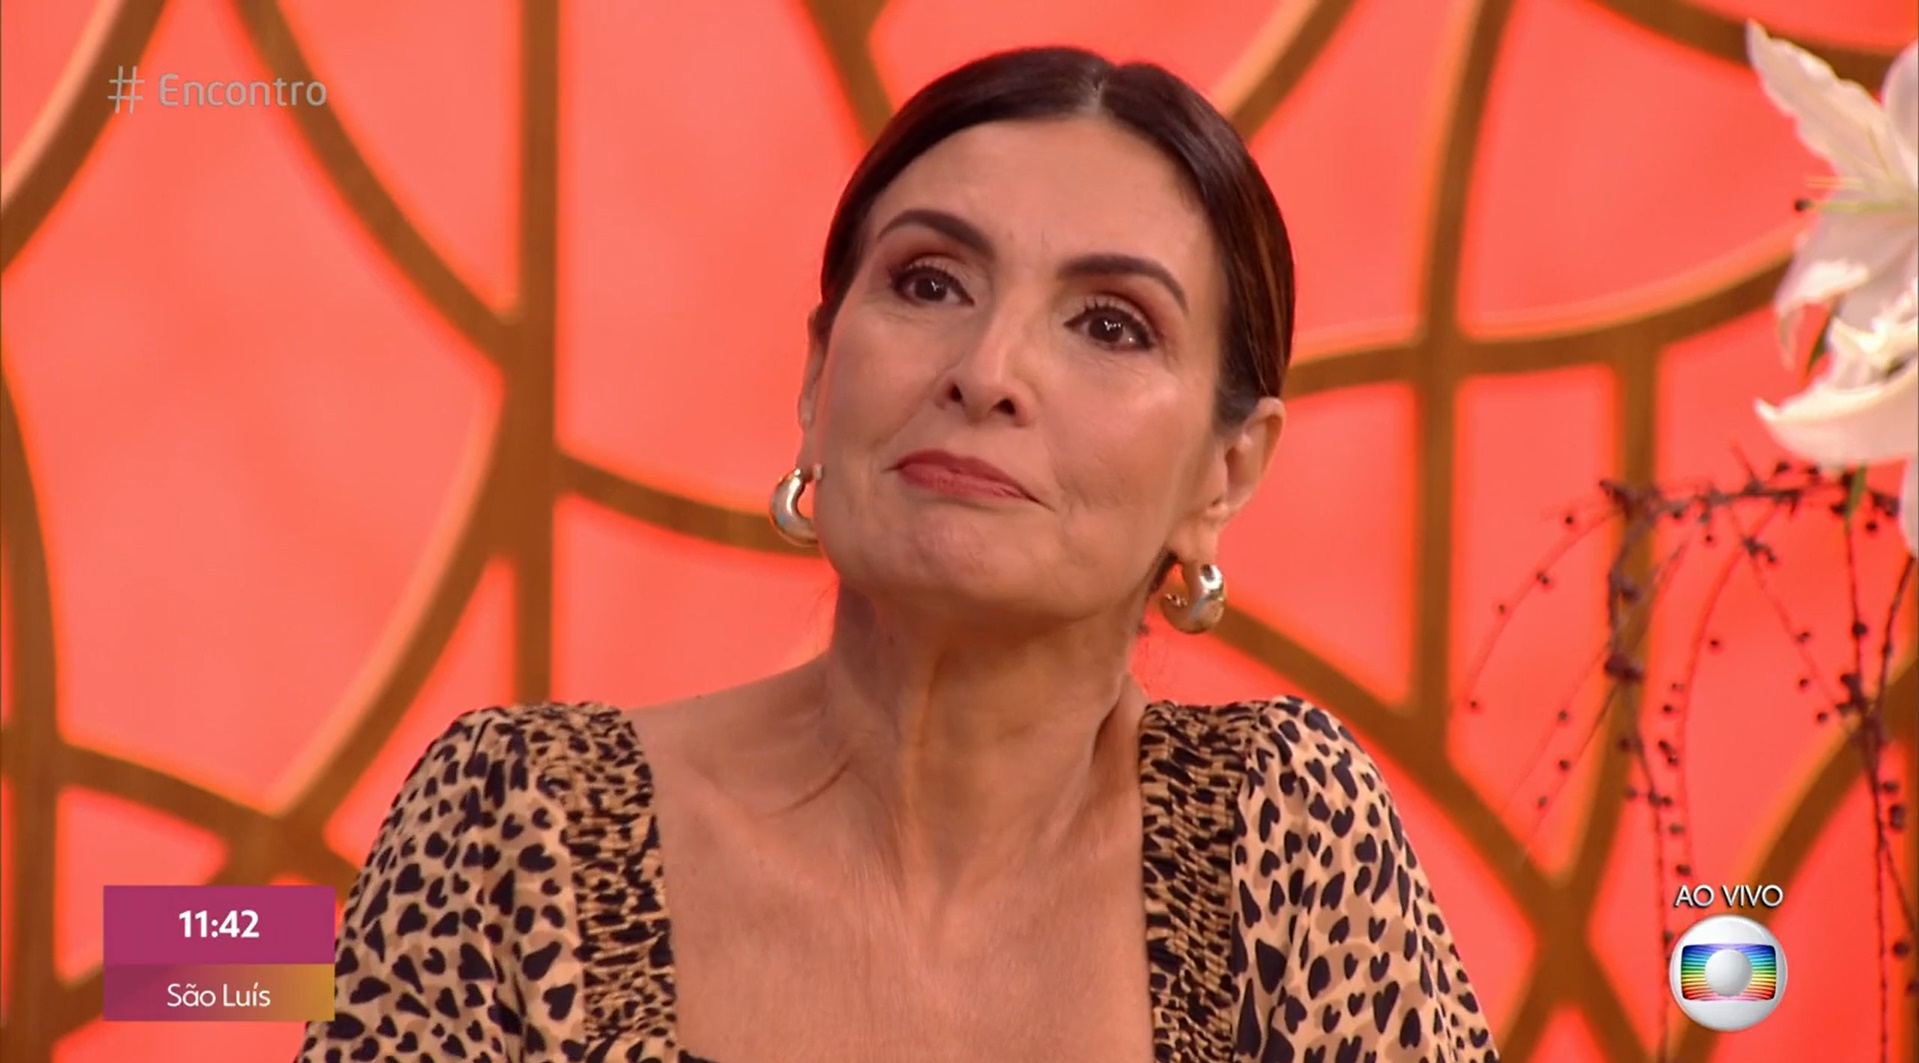 Fátima Bernardes chorou durante o 'Encontro' (Foto: Reprodução)